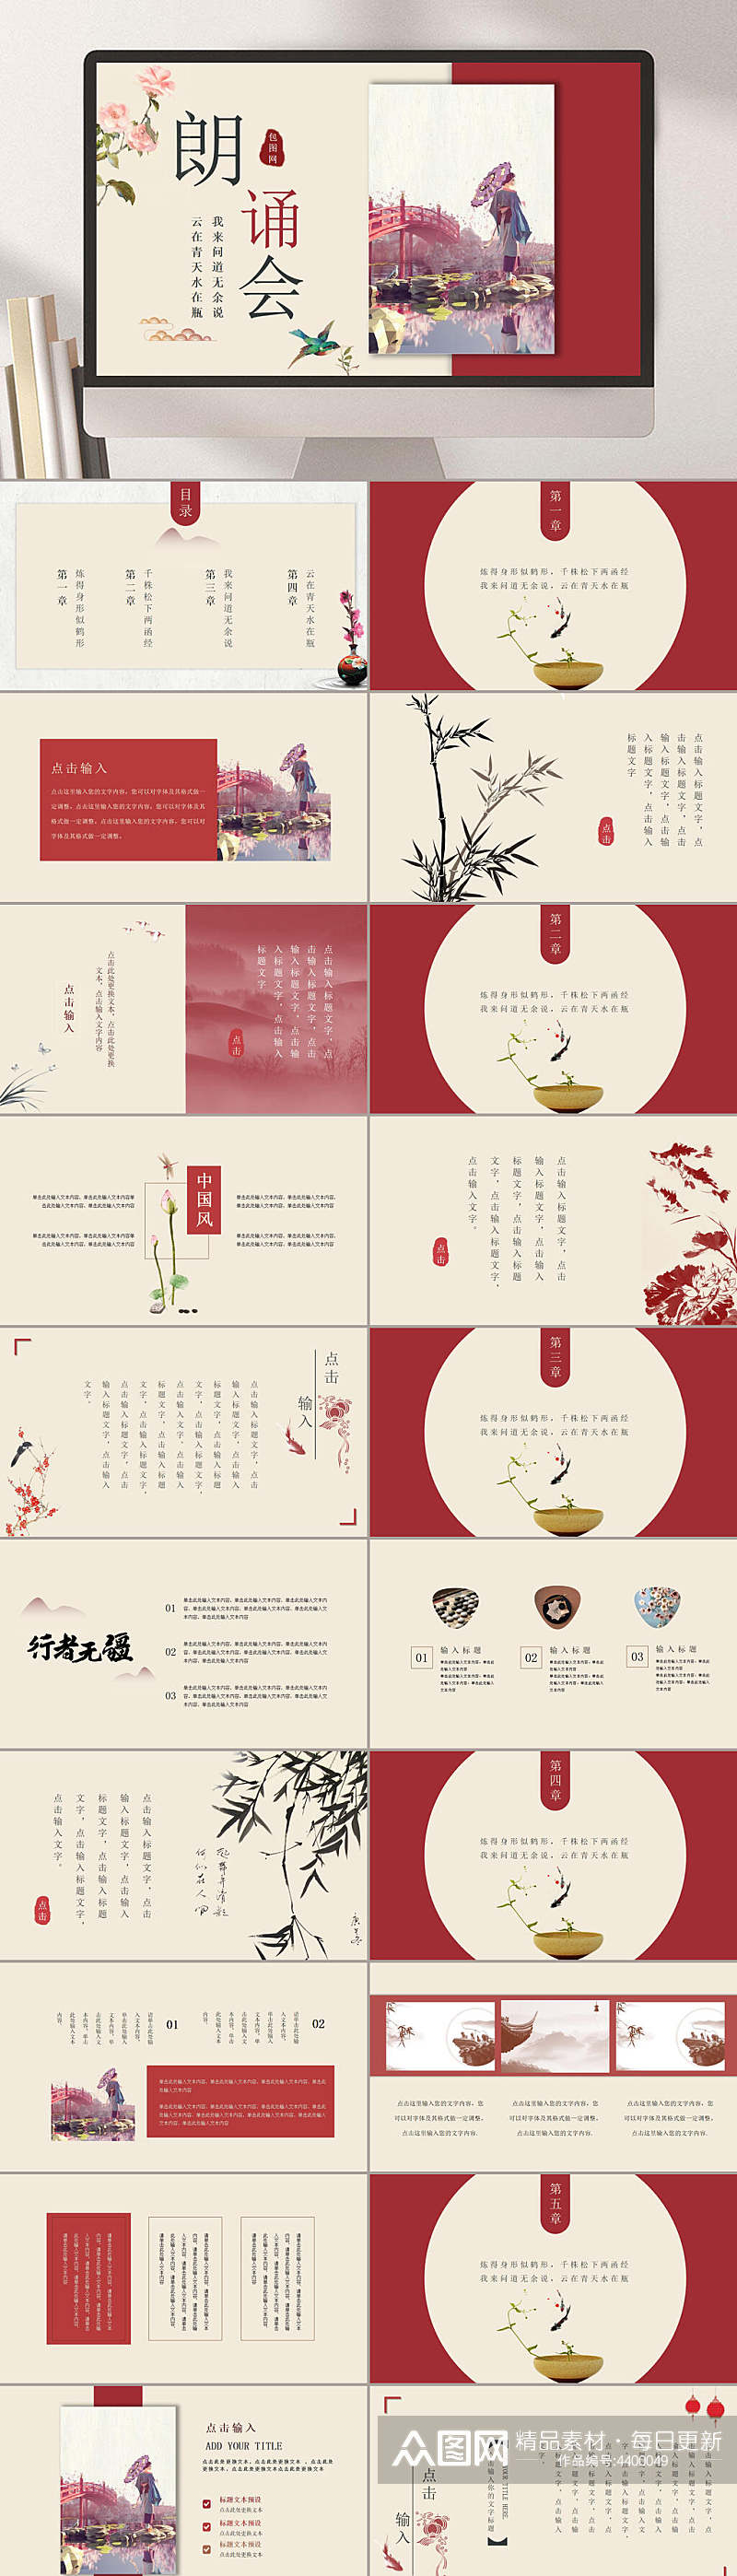 中国传统风格诗词朗诵展示会PPT素材